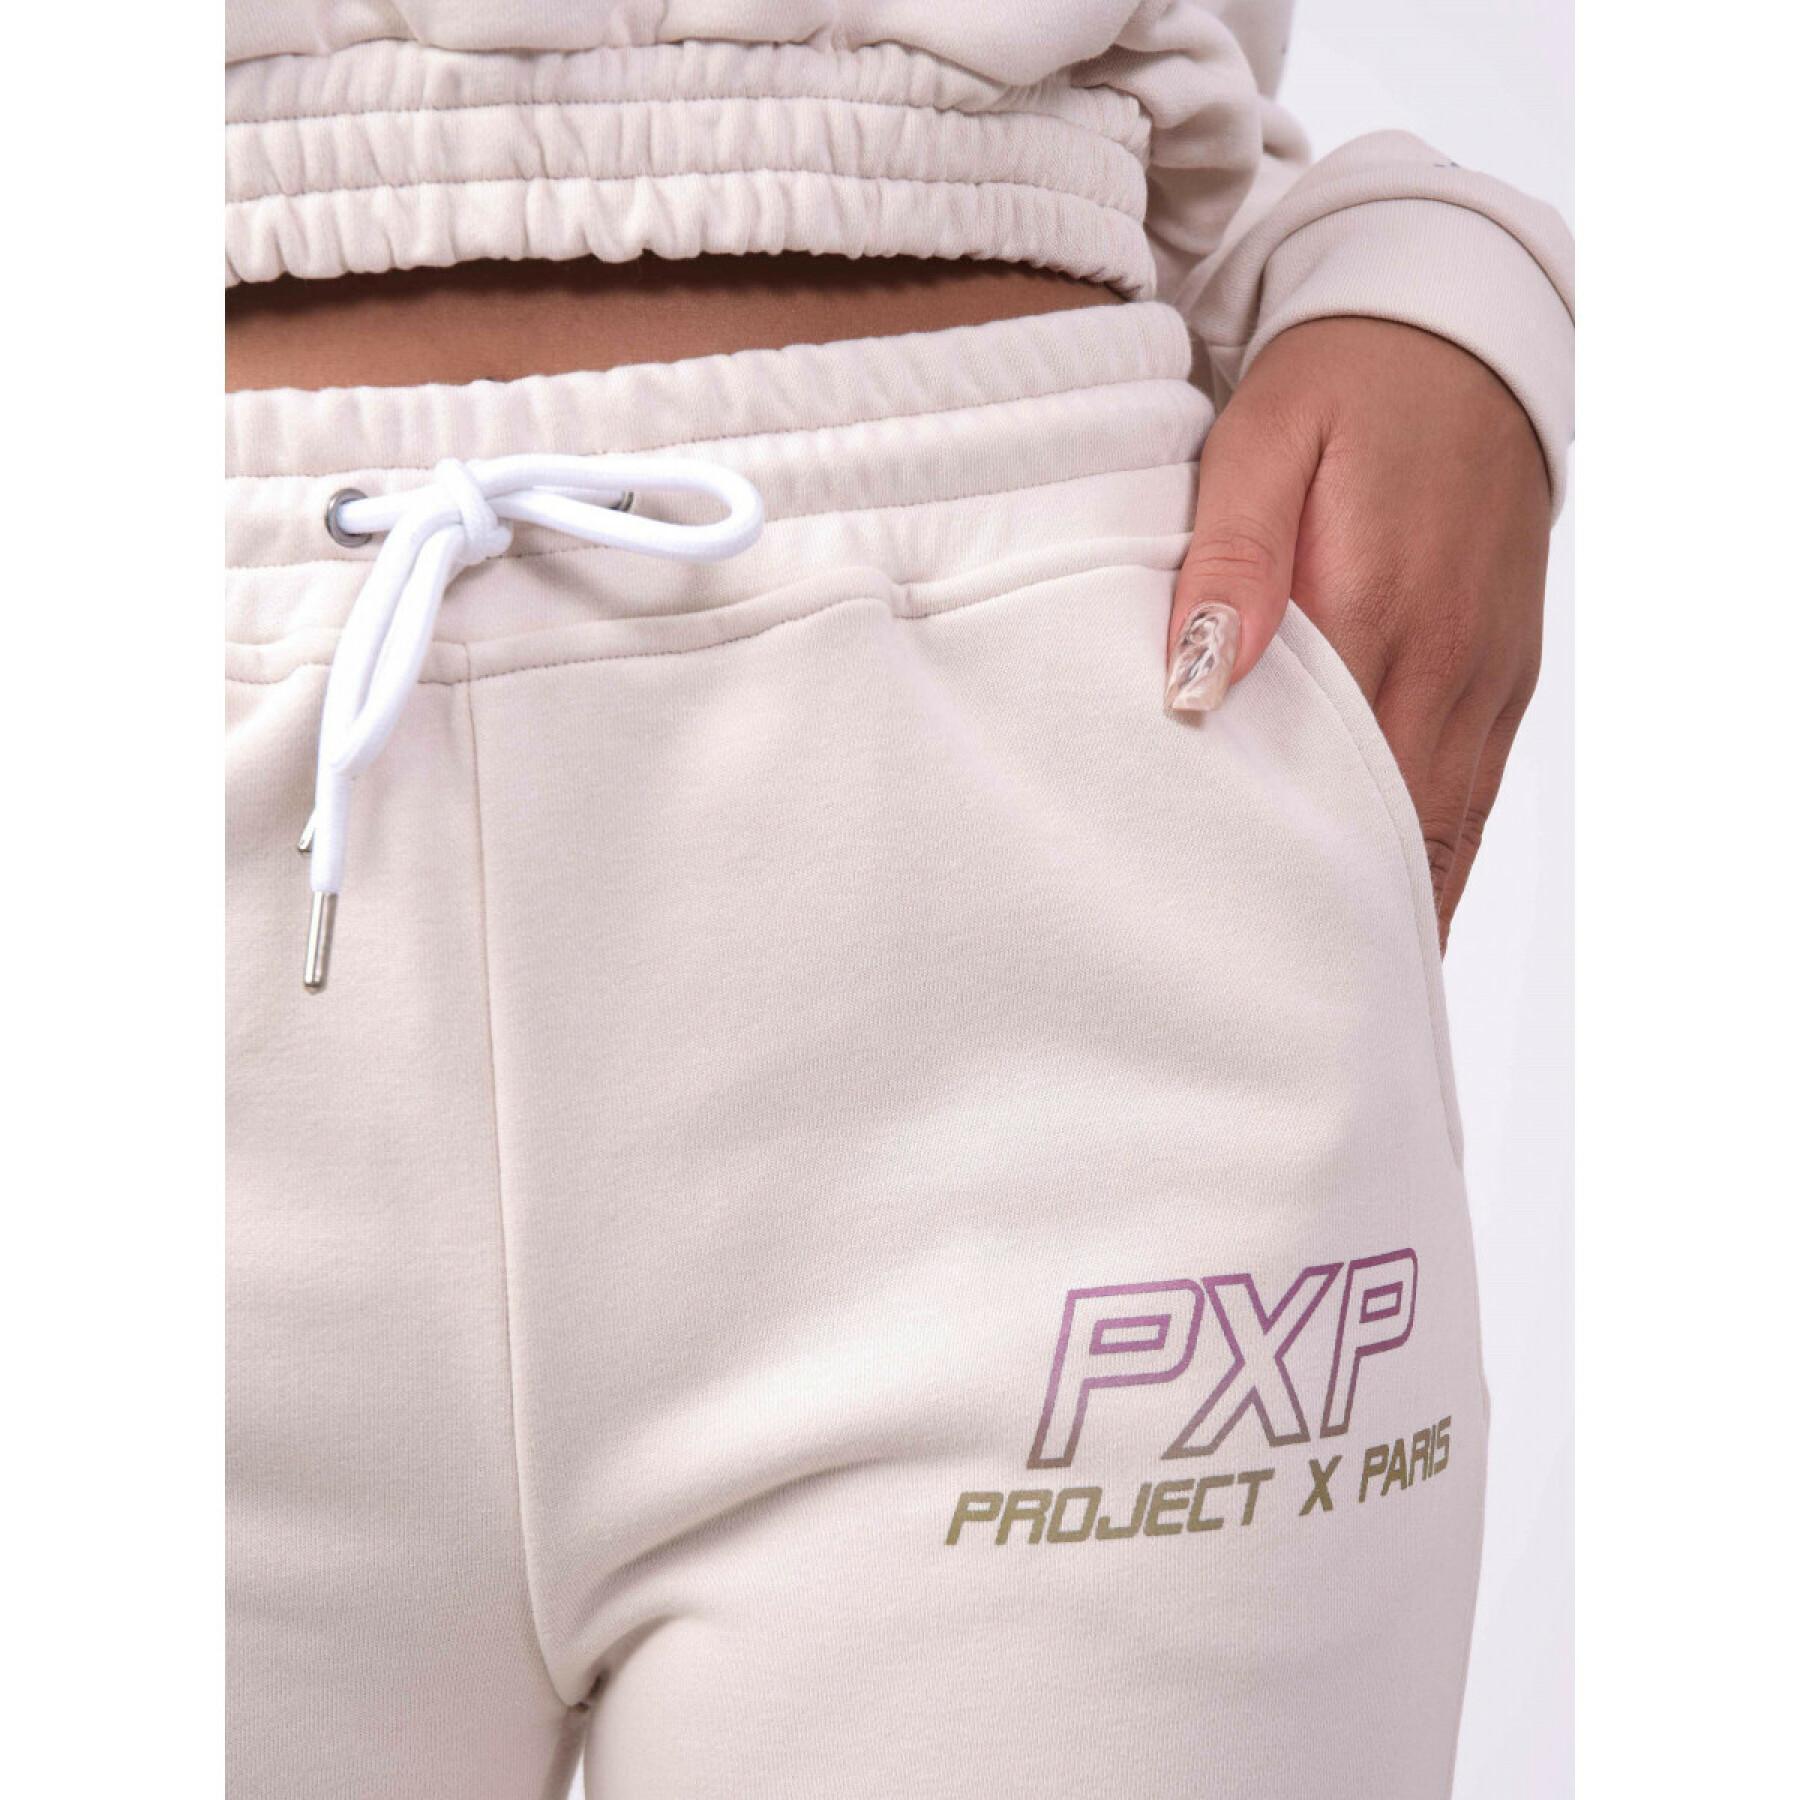 Iridescent logo jogging suit for women Project X Paris